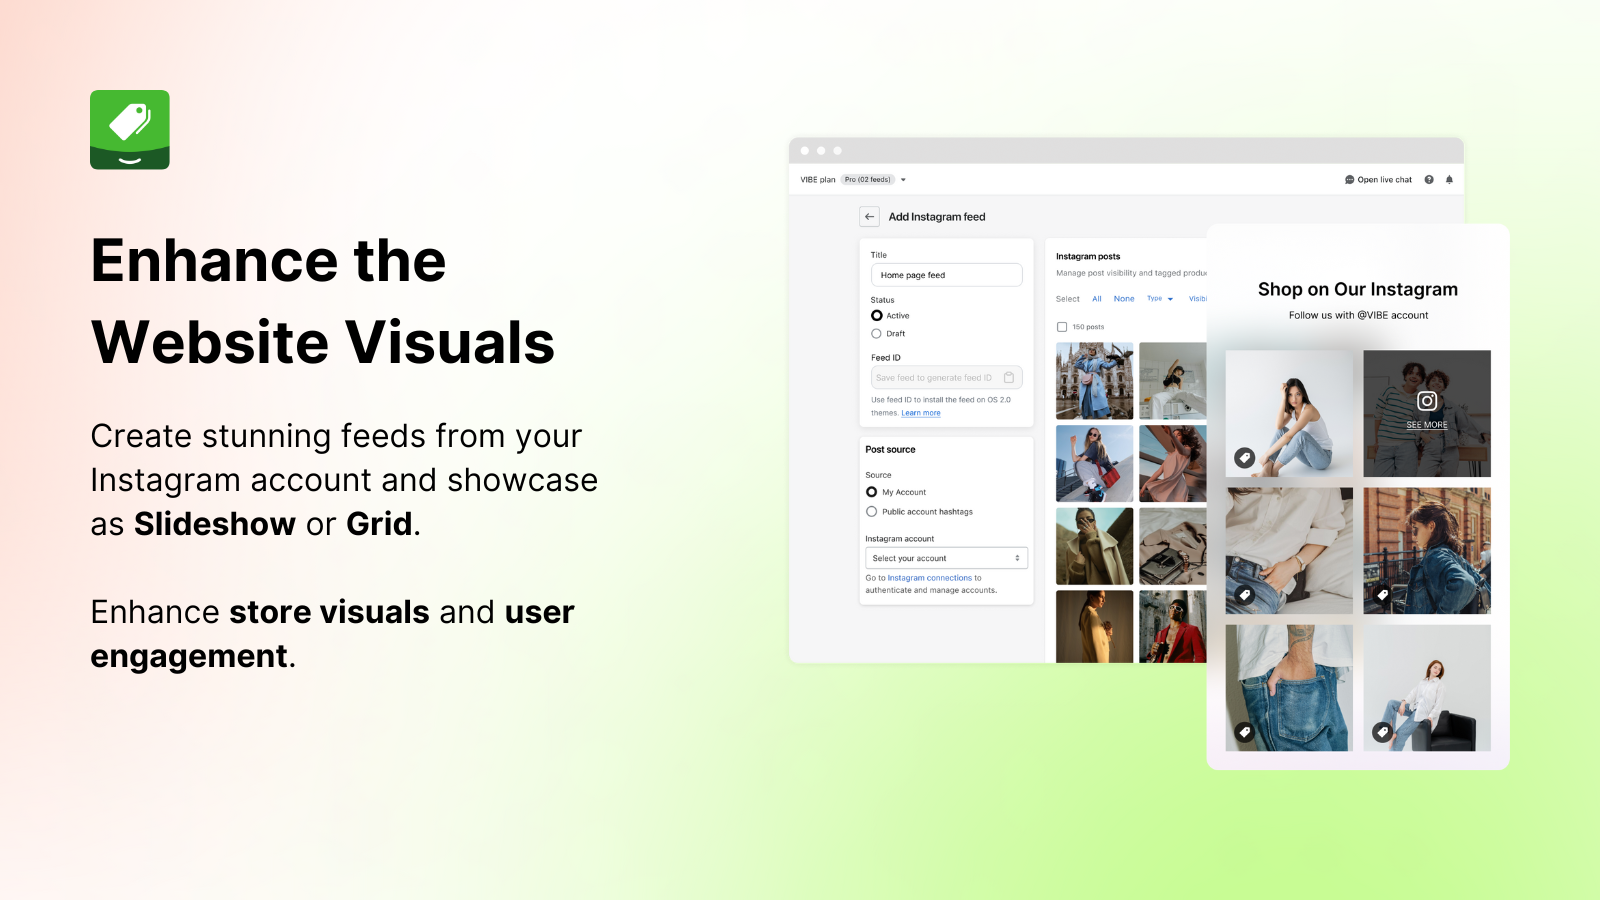 vibe instagram feed helpt de visuals van de website te verbeteren